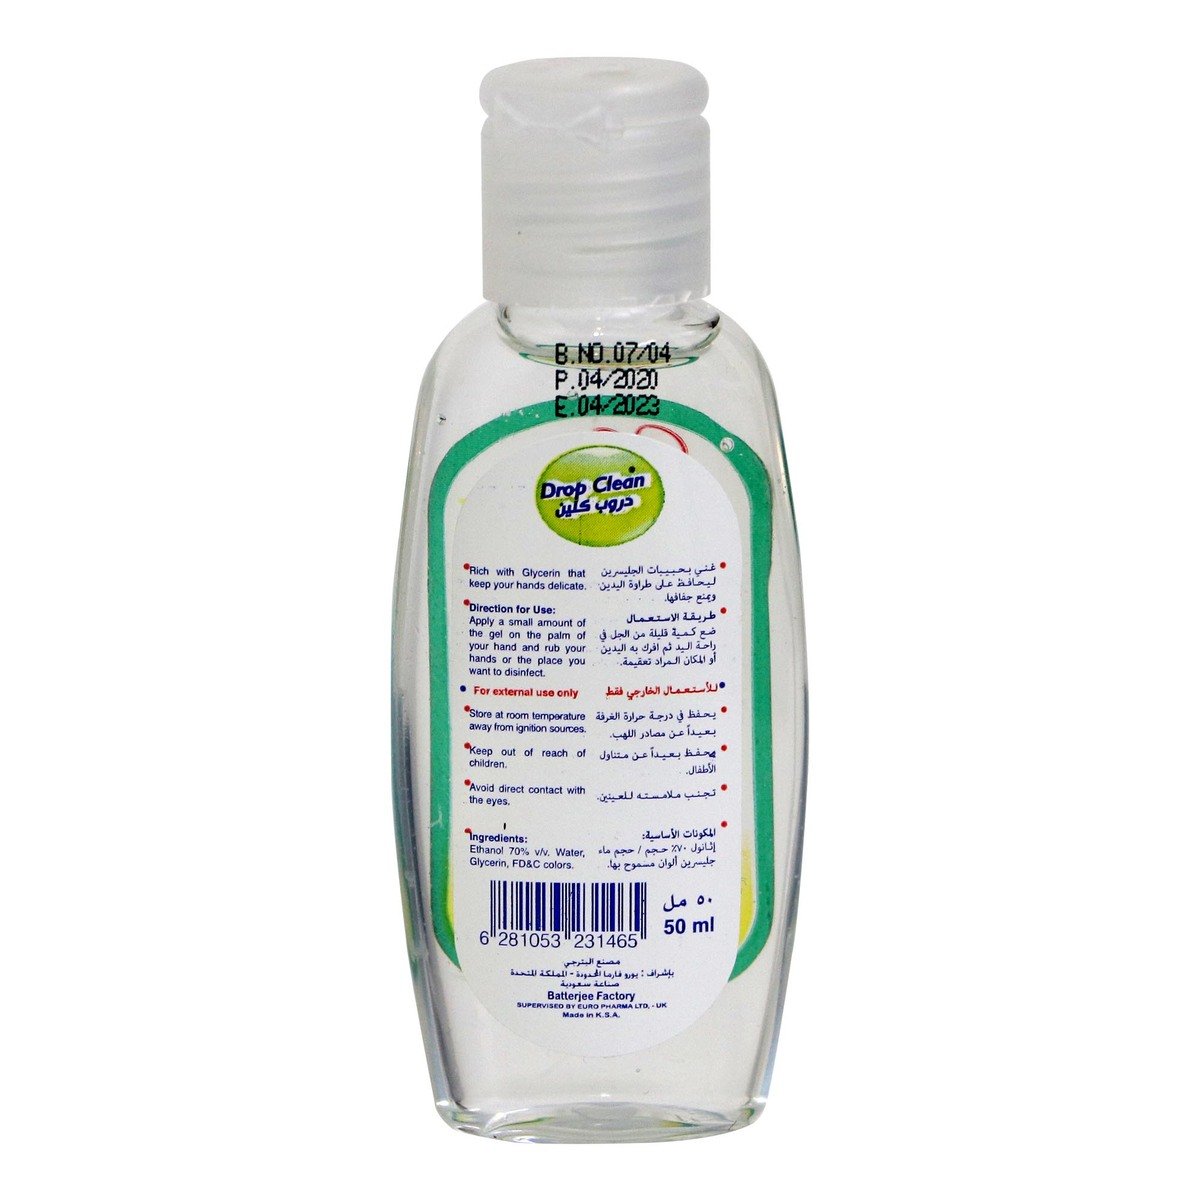 Drop Clean Hand Sanitizer 50ml